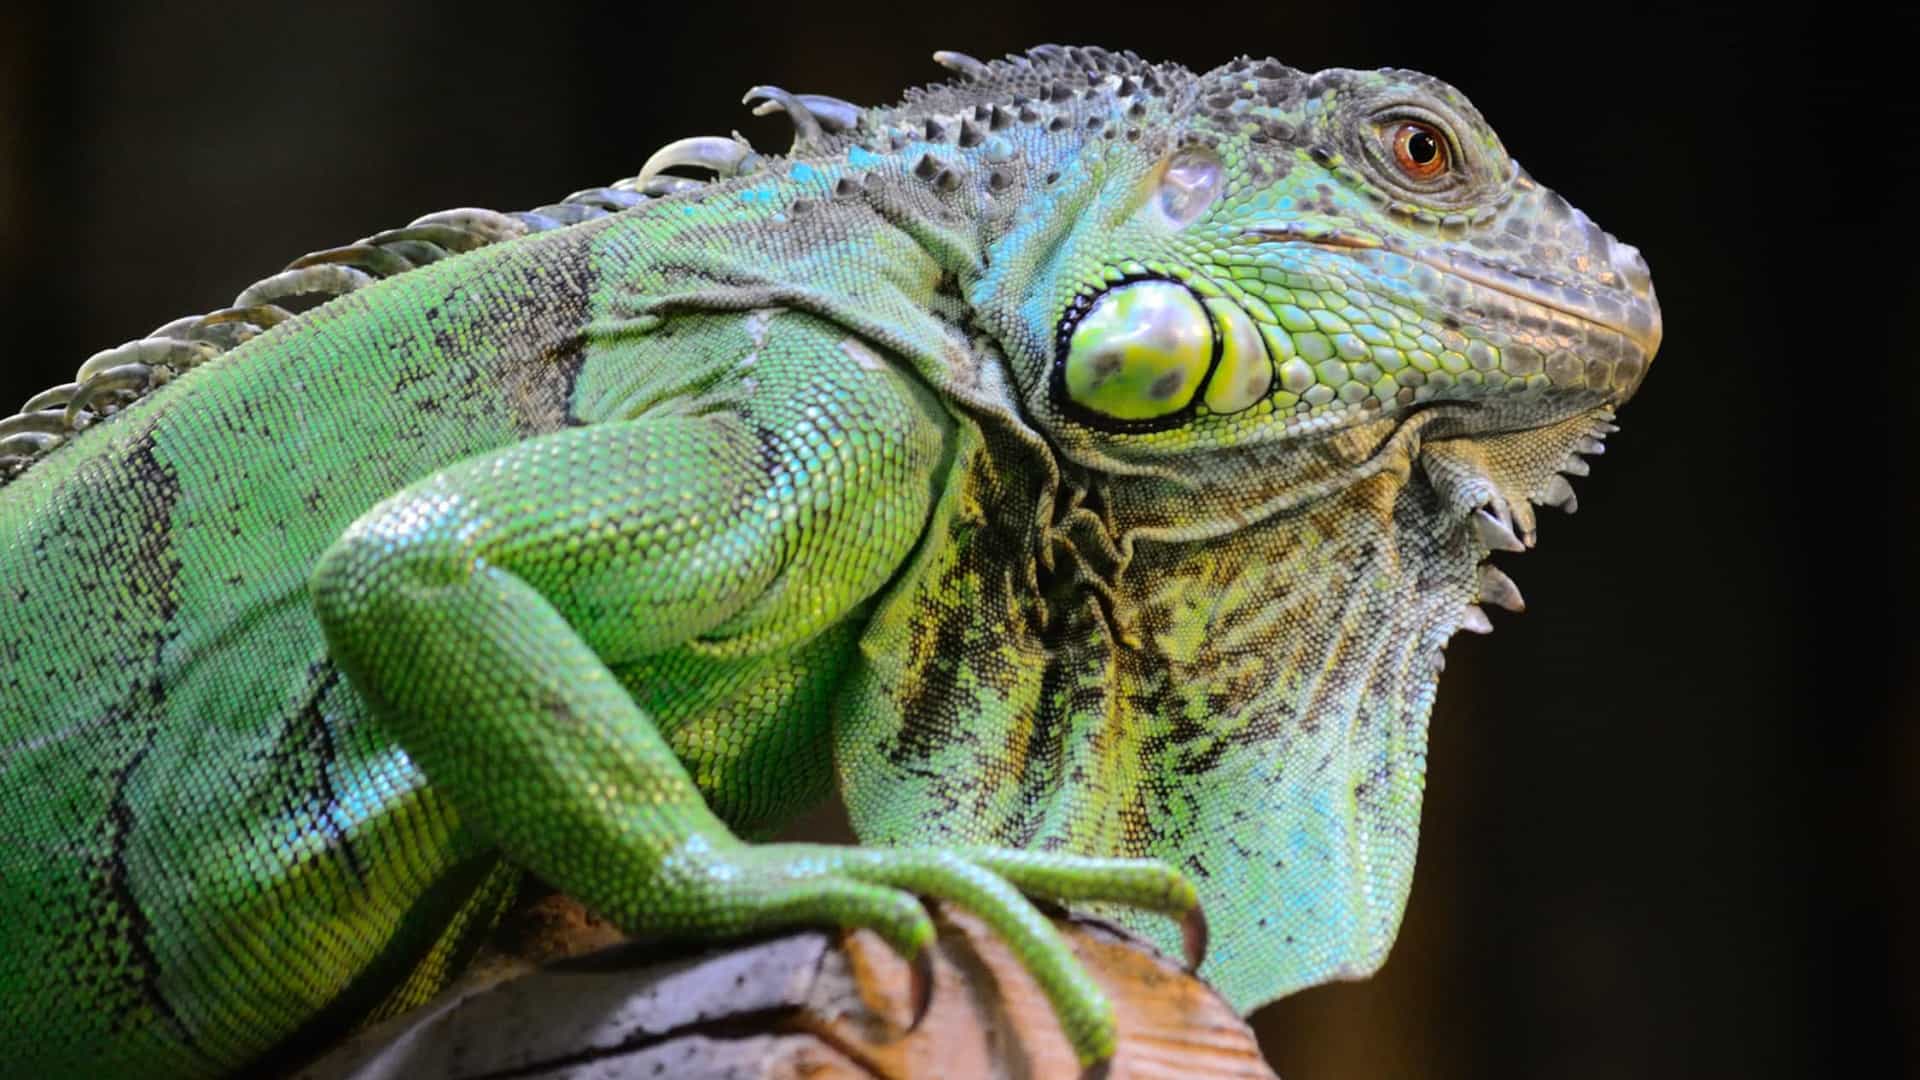 Iguanas - Qual seu habitat natural, qual sua origem e como vivem?